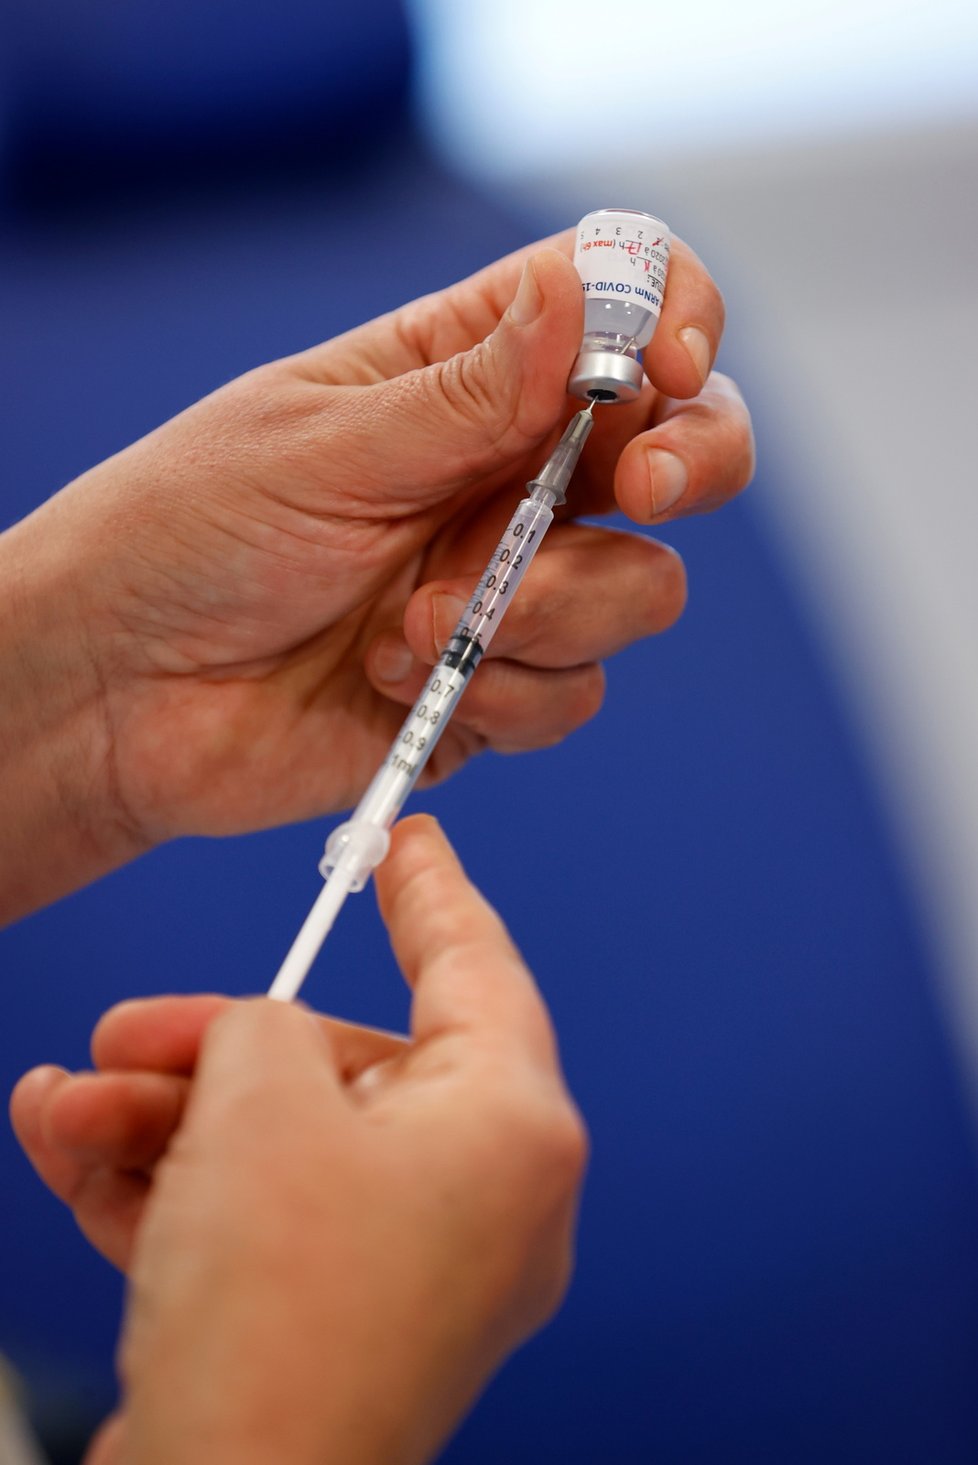 Začátek očkování proti covidu ve Francii (27.12.2020)